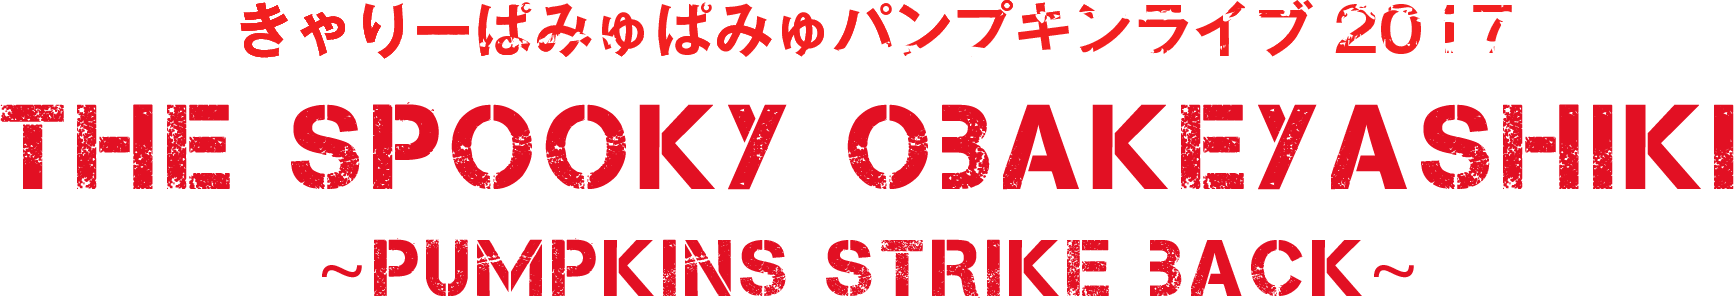 きゃりーぱみゅぱみゅパンプキンライブ 2017 THE SPOOKY OBAKEYASHIKI -PUMPKINS STRIKE BACK-